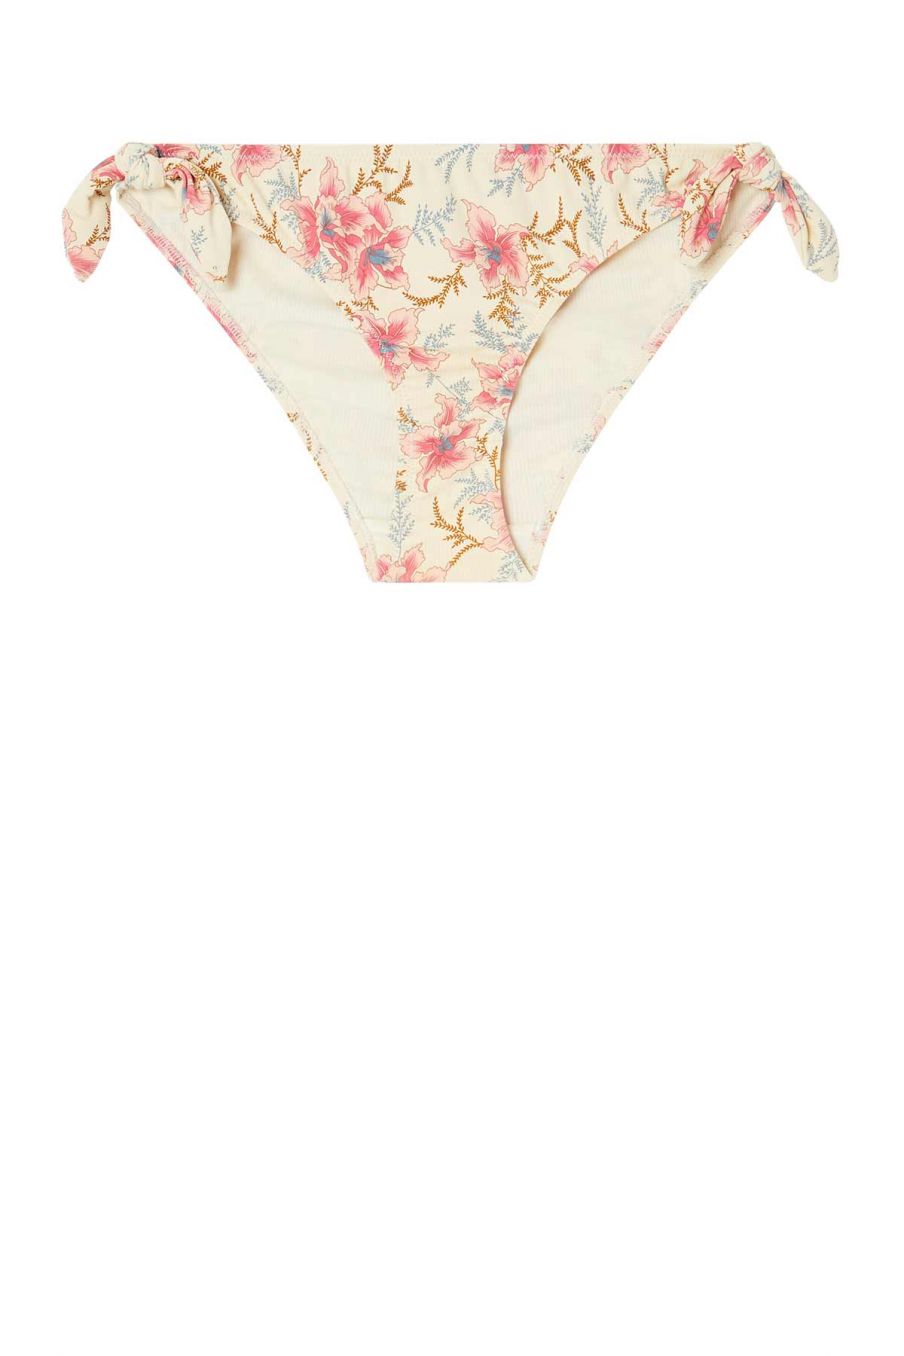 women-swimwear-kauai-raspberry-flowers